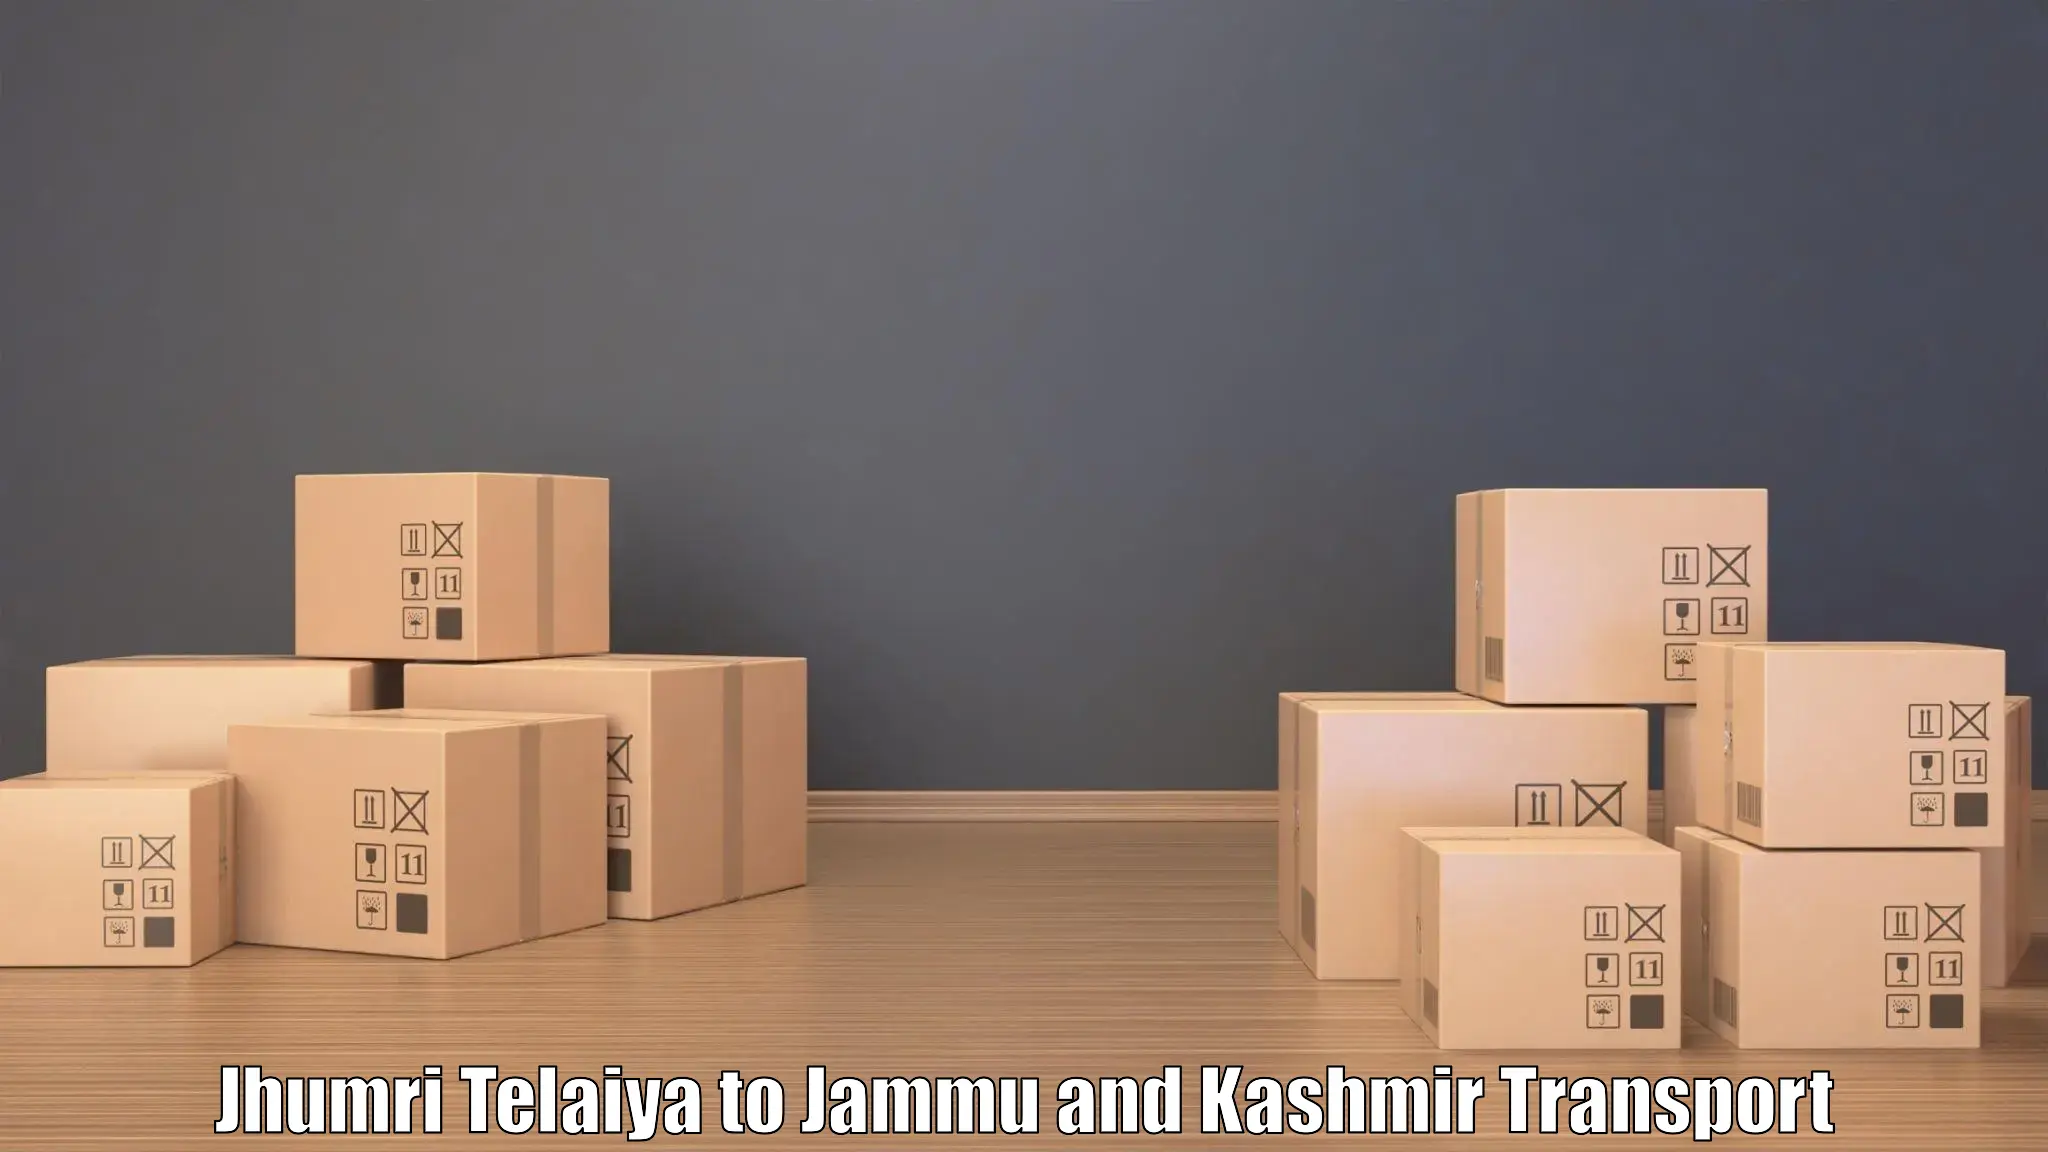 Domestic transport services Jhumri Telaiya to Shopian